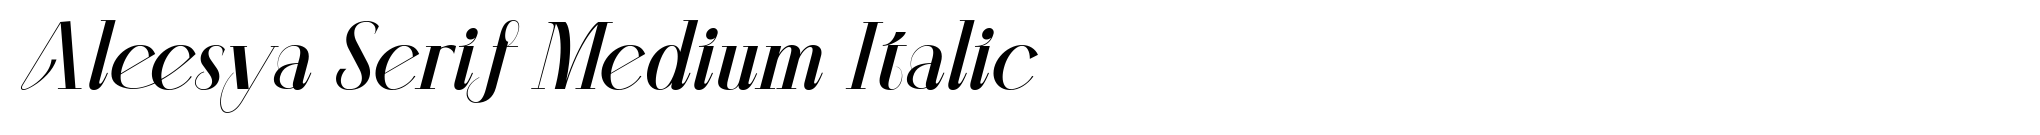 Aleesya Serif Medium Italic image